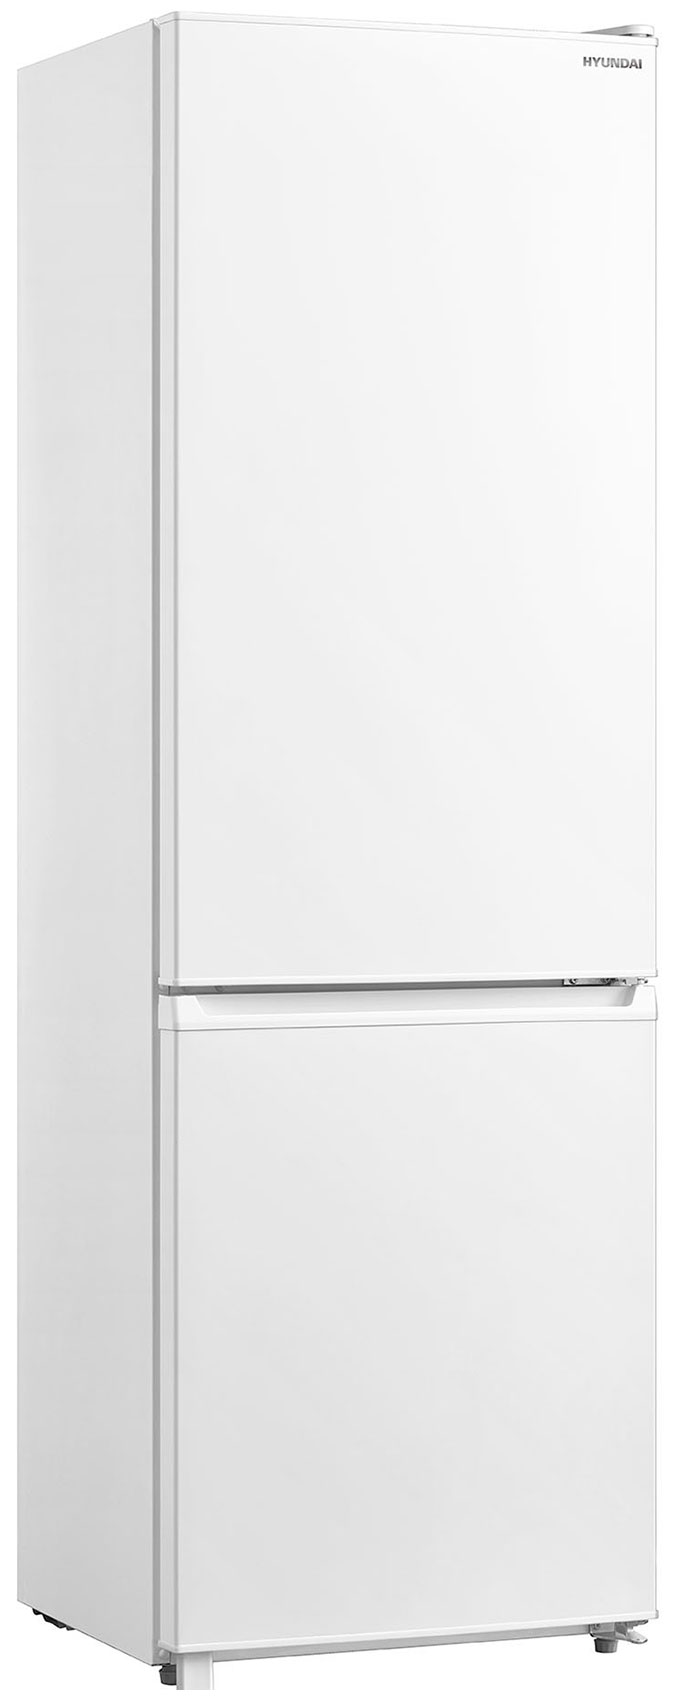 Двухкамерный холодильник Hyundai CC3091LWT белый холодильник hyundai cc3091lwt белый двухкамерный